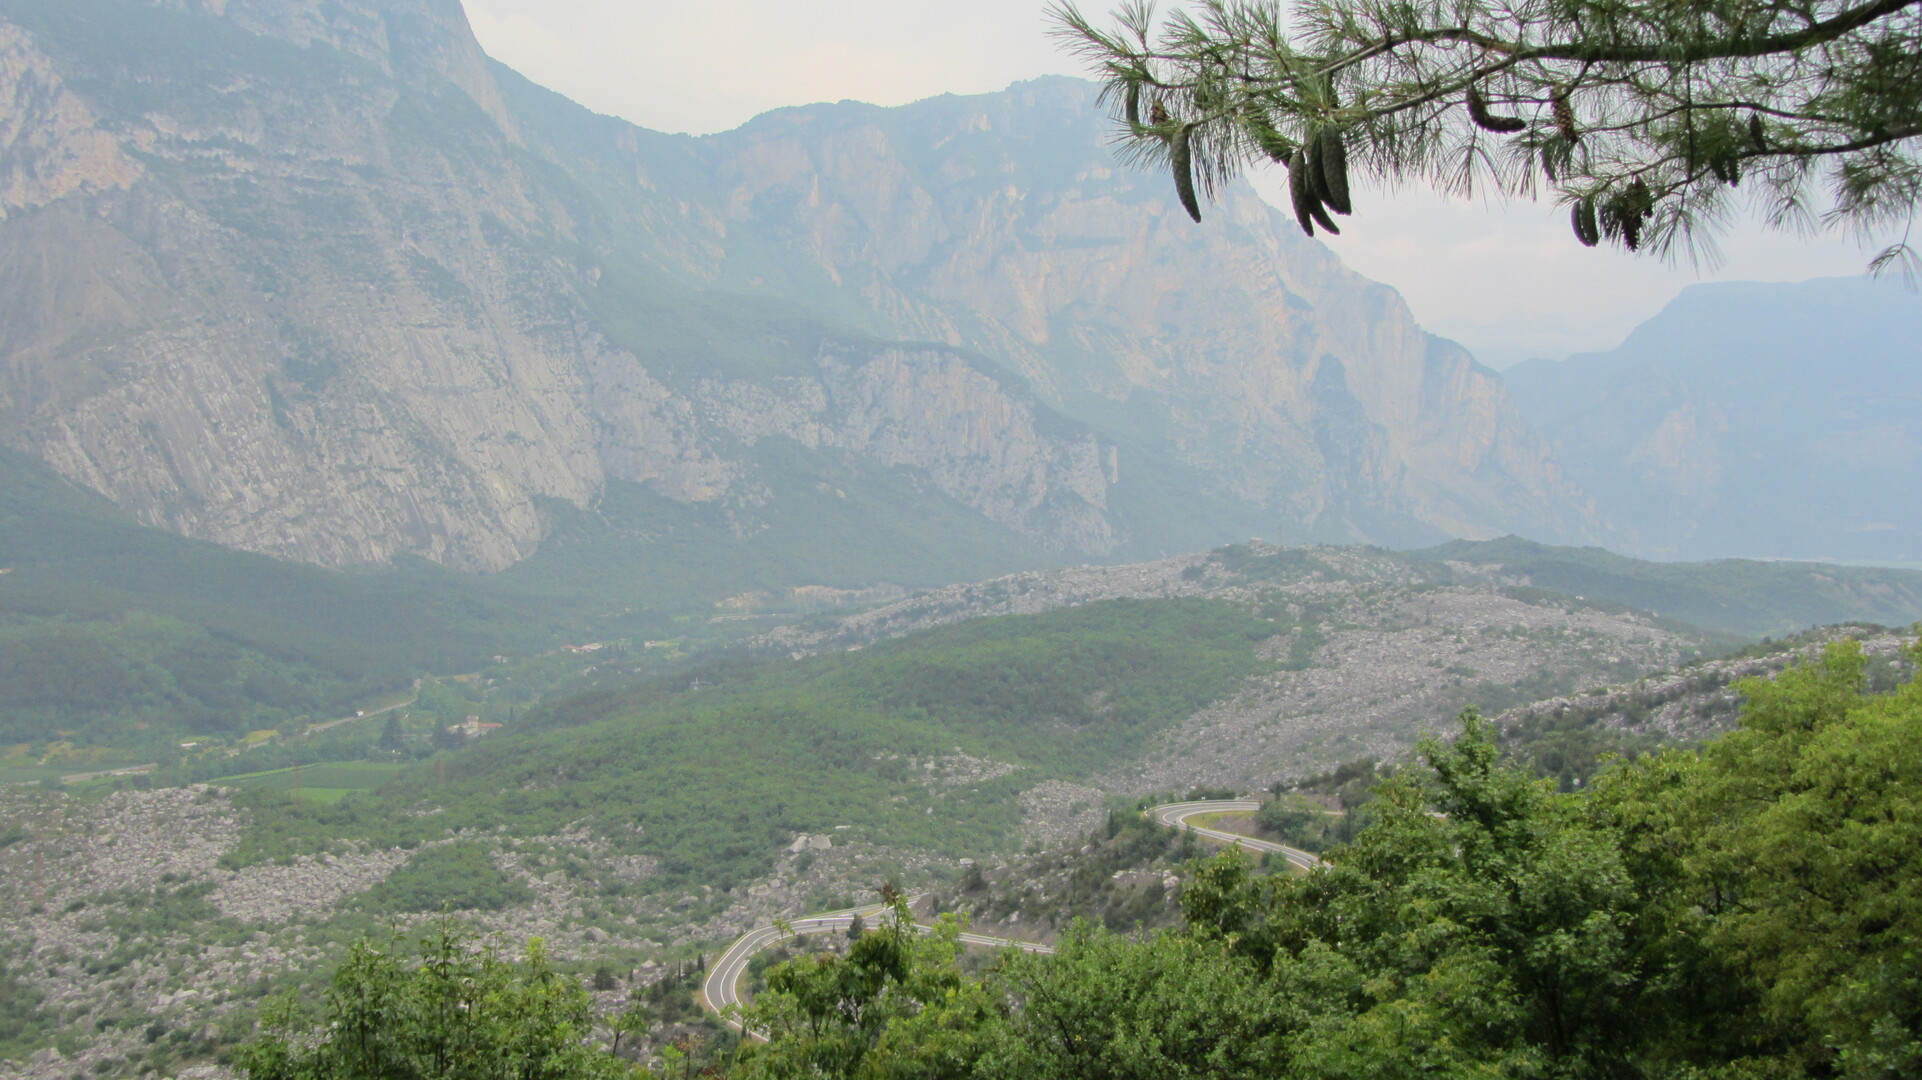 Nochmal ein Blick ins Tal der Sarca mit dem Monte Casale dahinter.